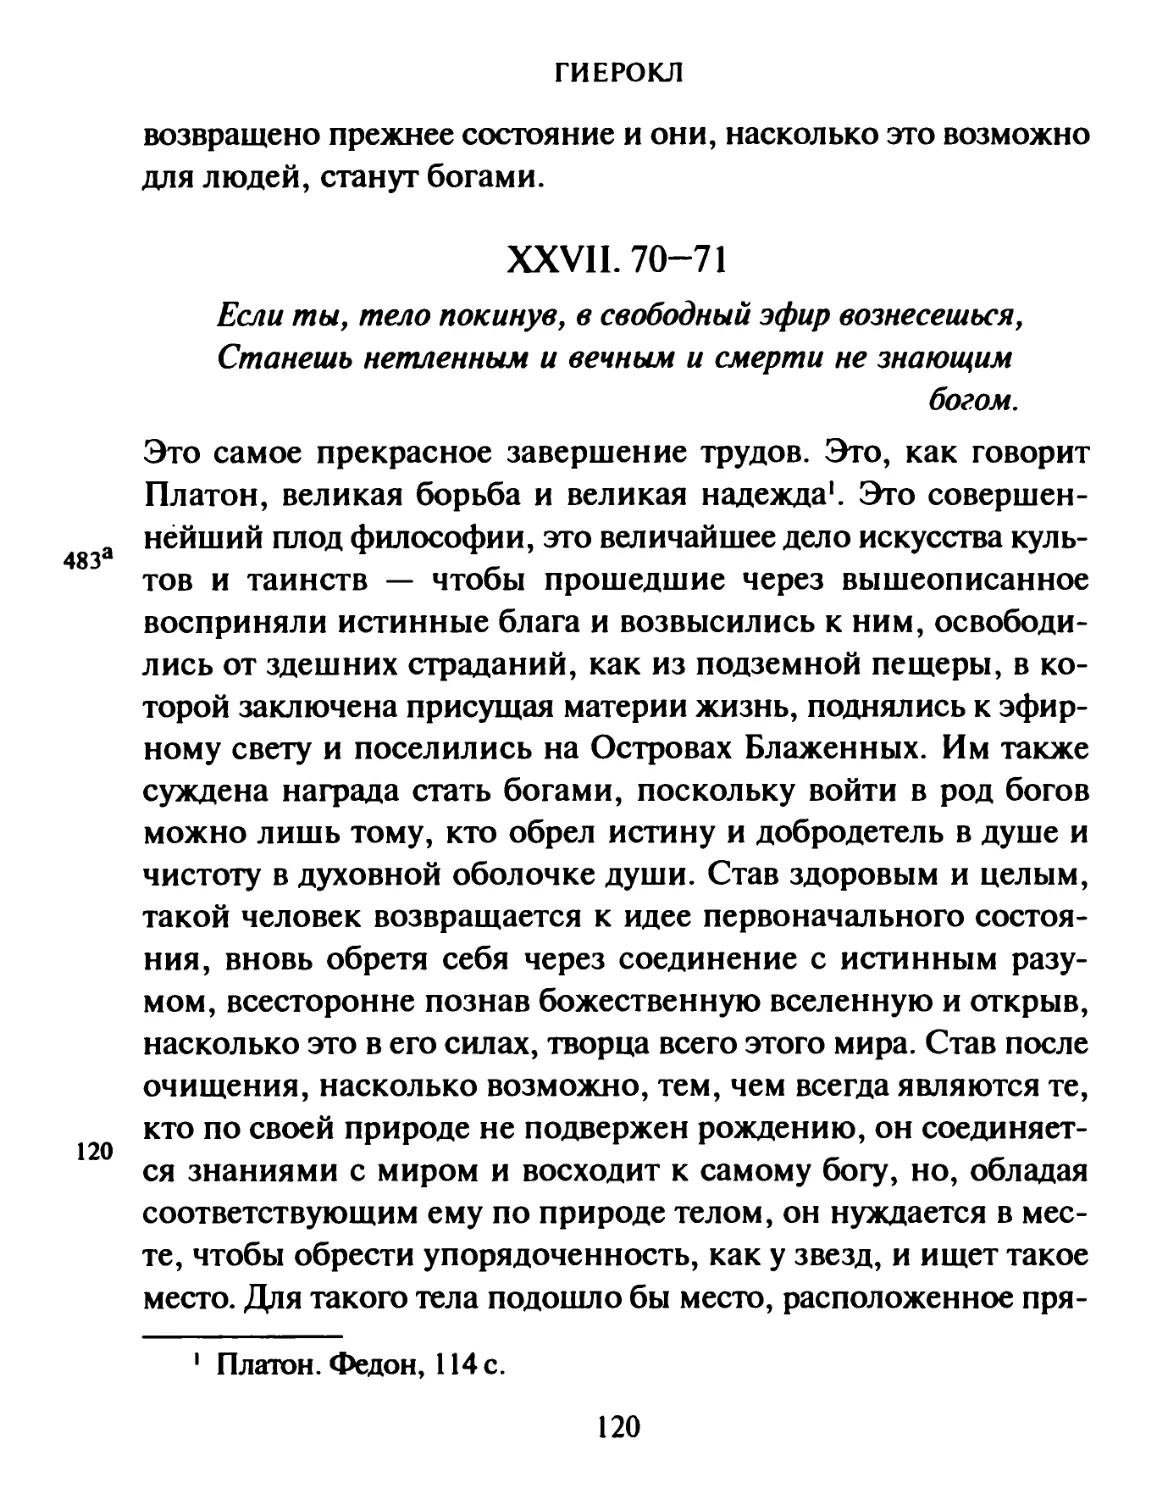 XXVII. 70-71